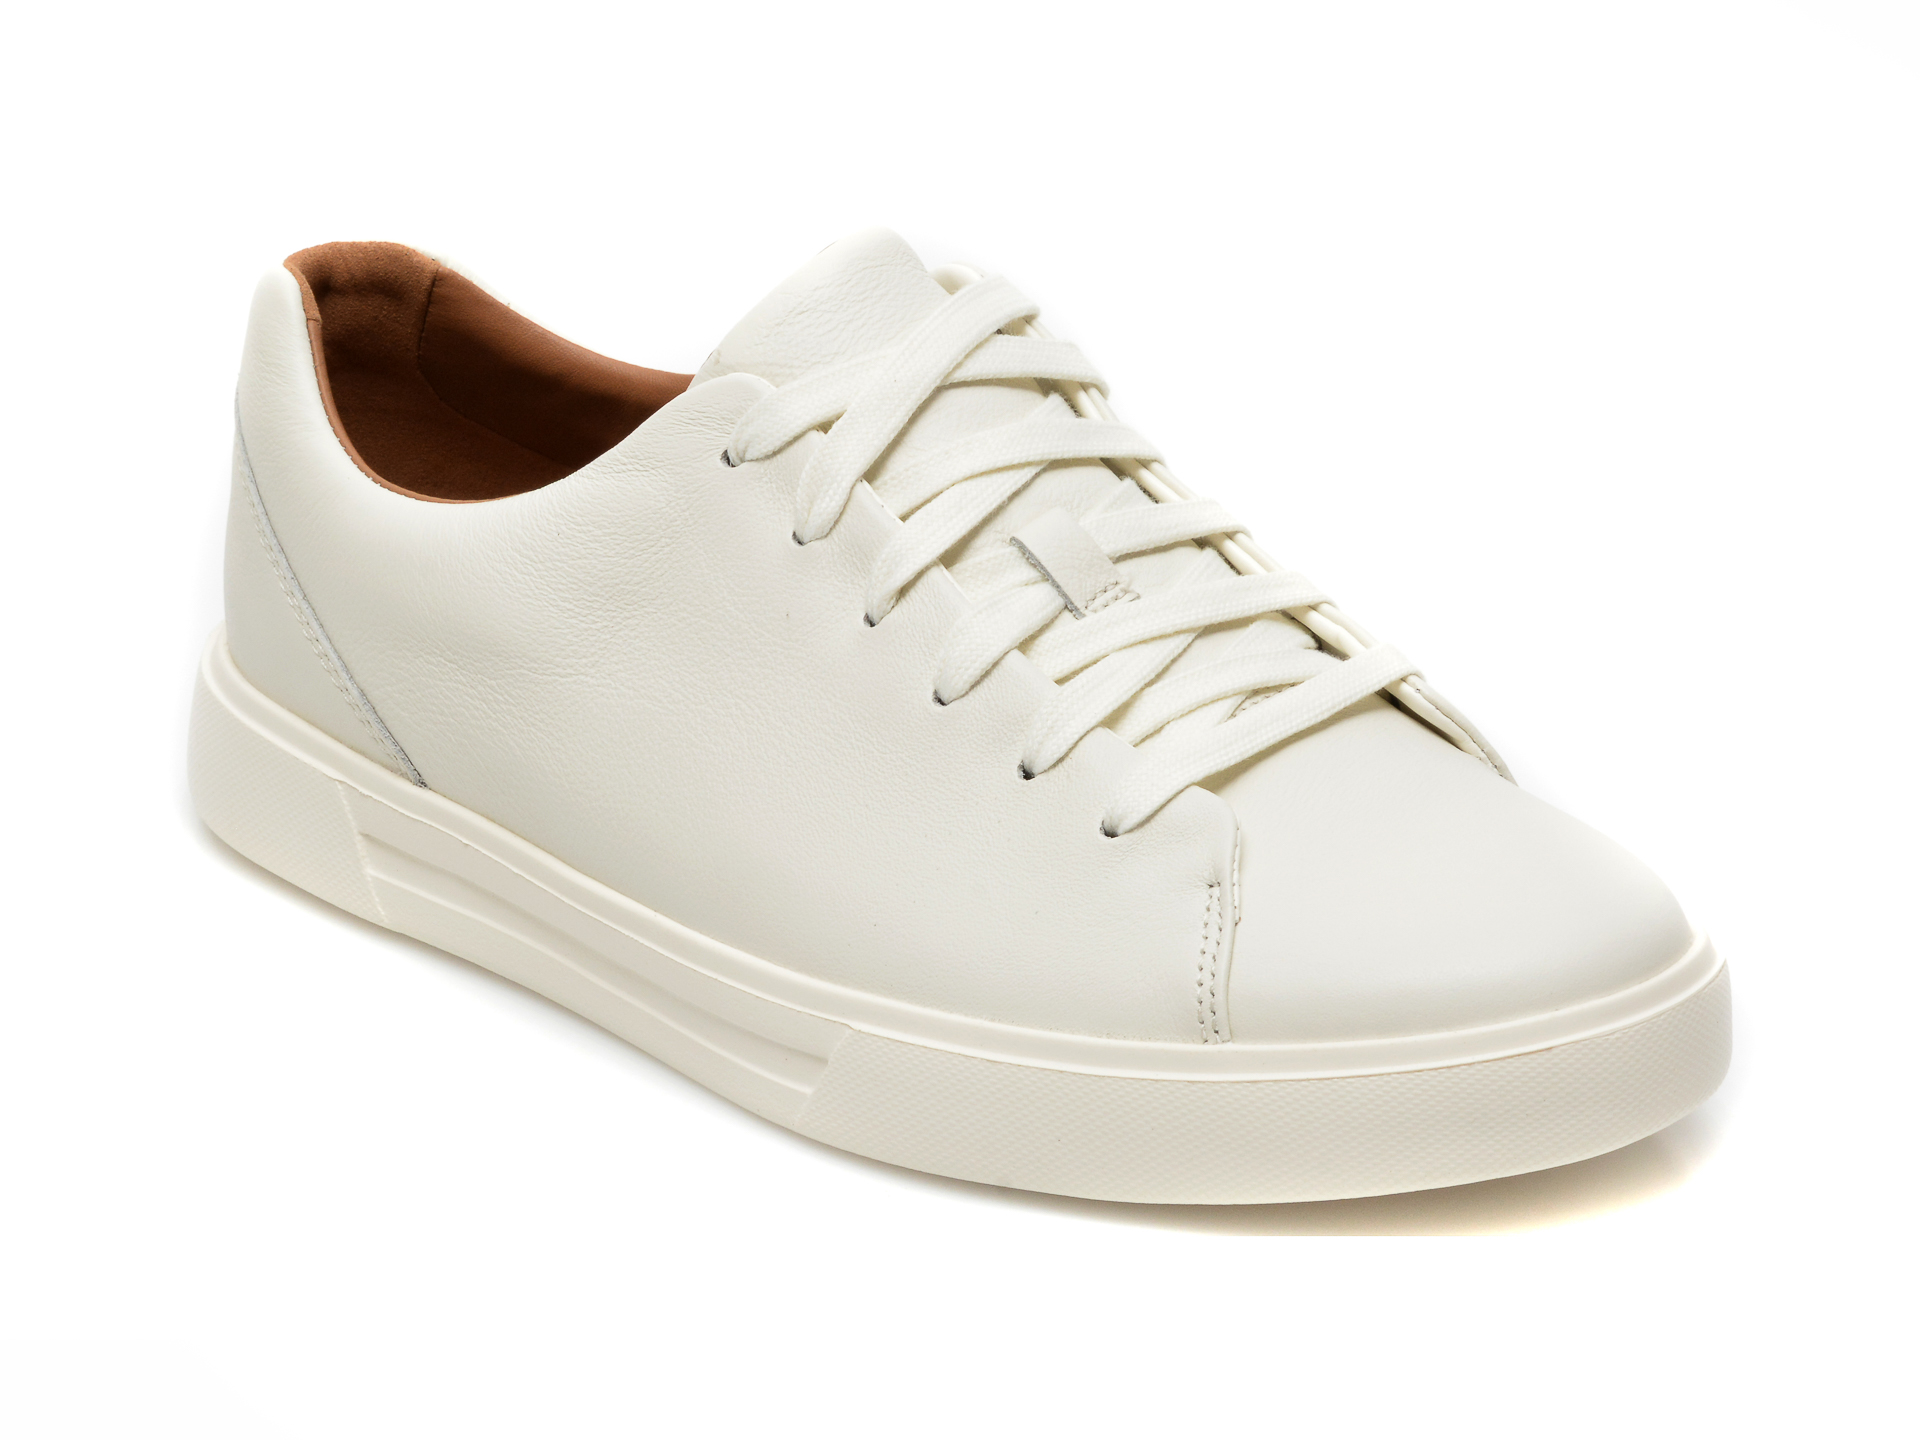 Pantofi sport CLARKS albi, UN COSTA LACE, din piele naturala Clarks Clarks